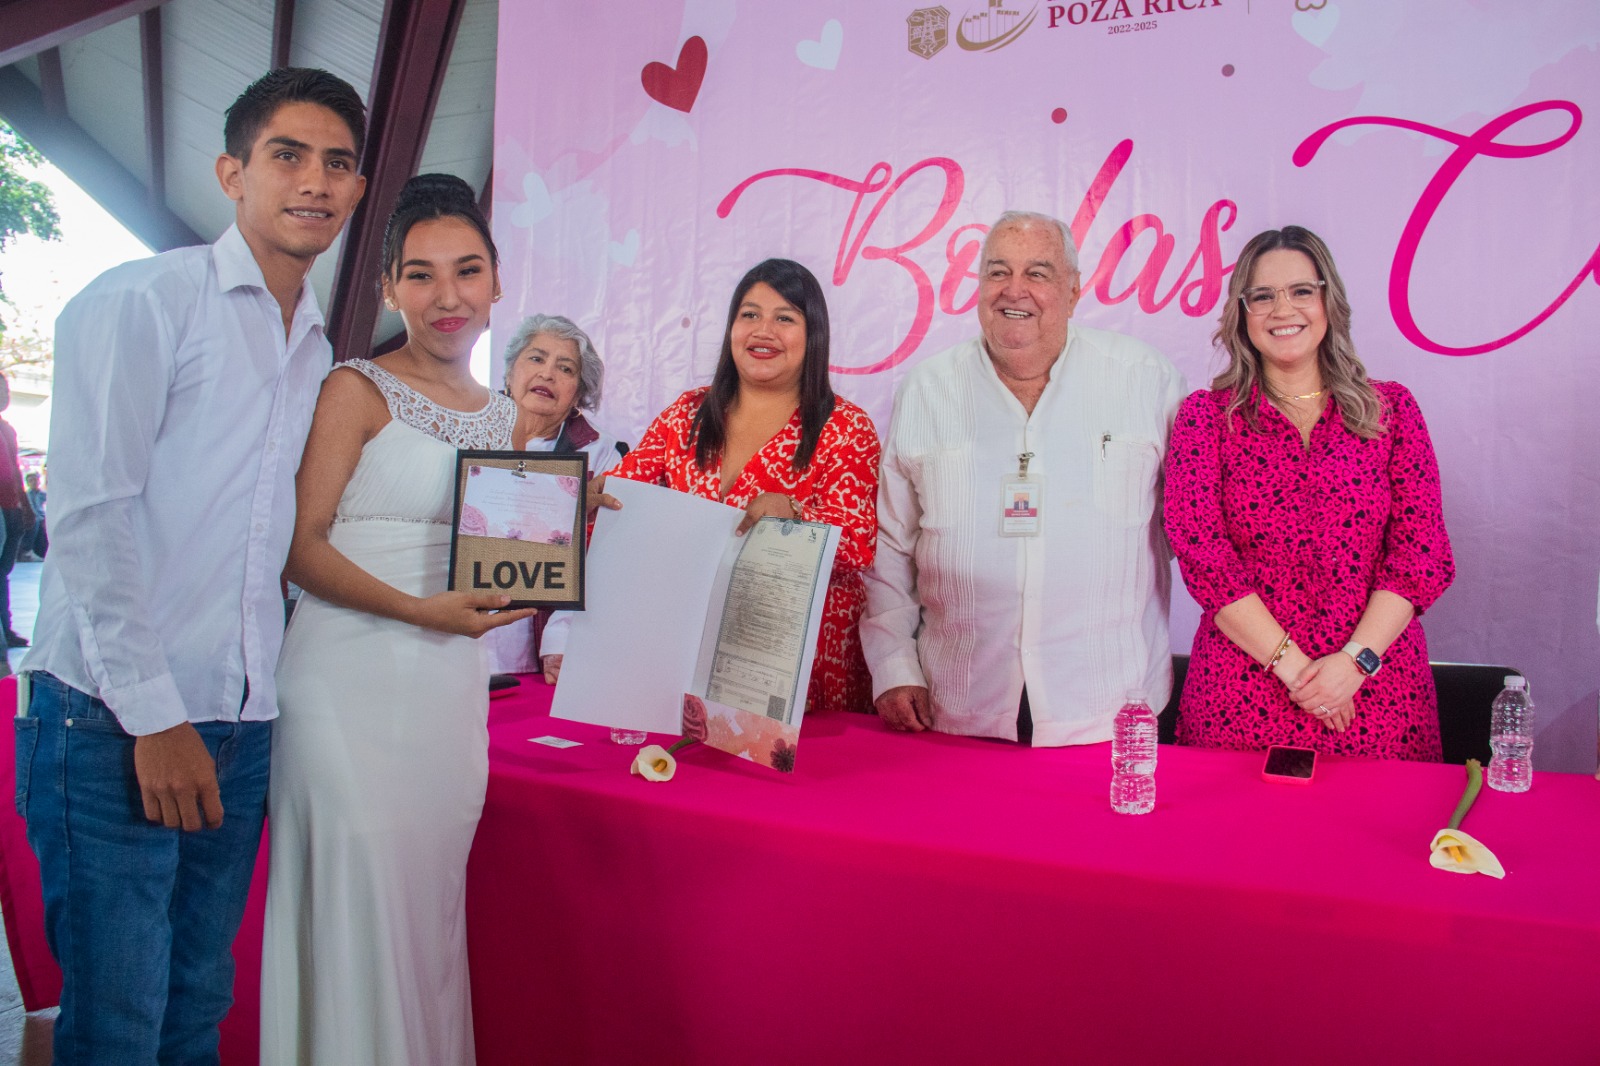 Con fotos, Rosy Fuentes y Quirino celebran aniversario de bodas